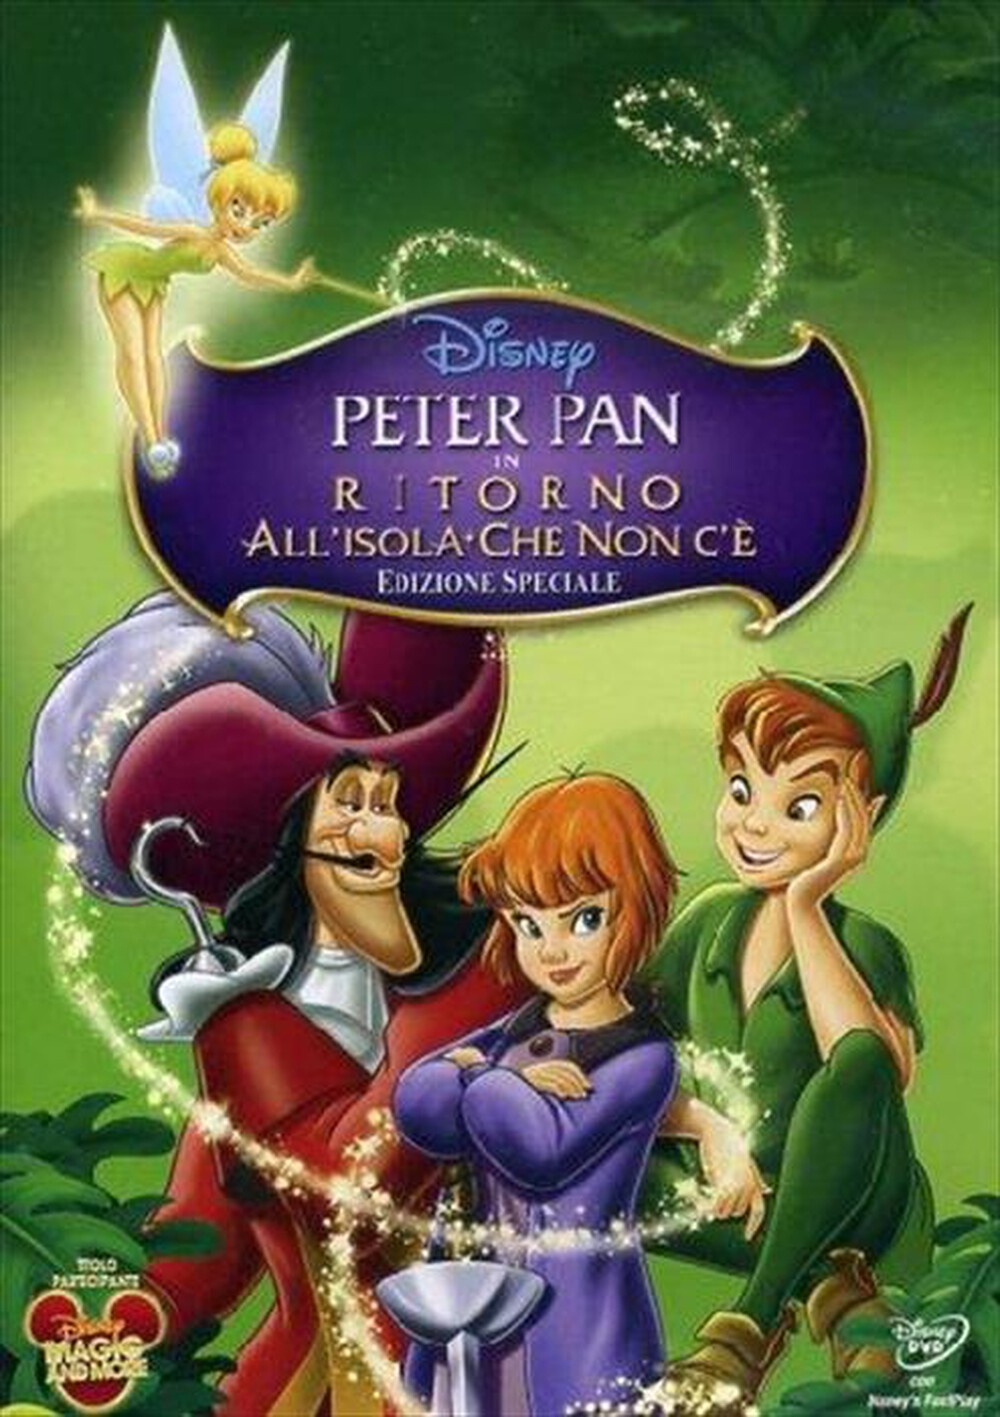 "WALT DISNEY - Peter Pan - Ritorno All'Isola Che Non C'E' (SE)"